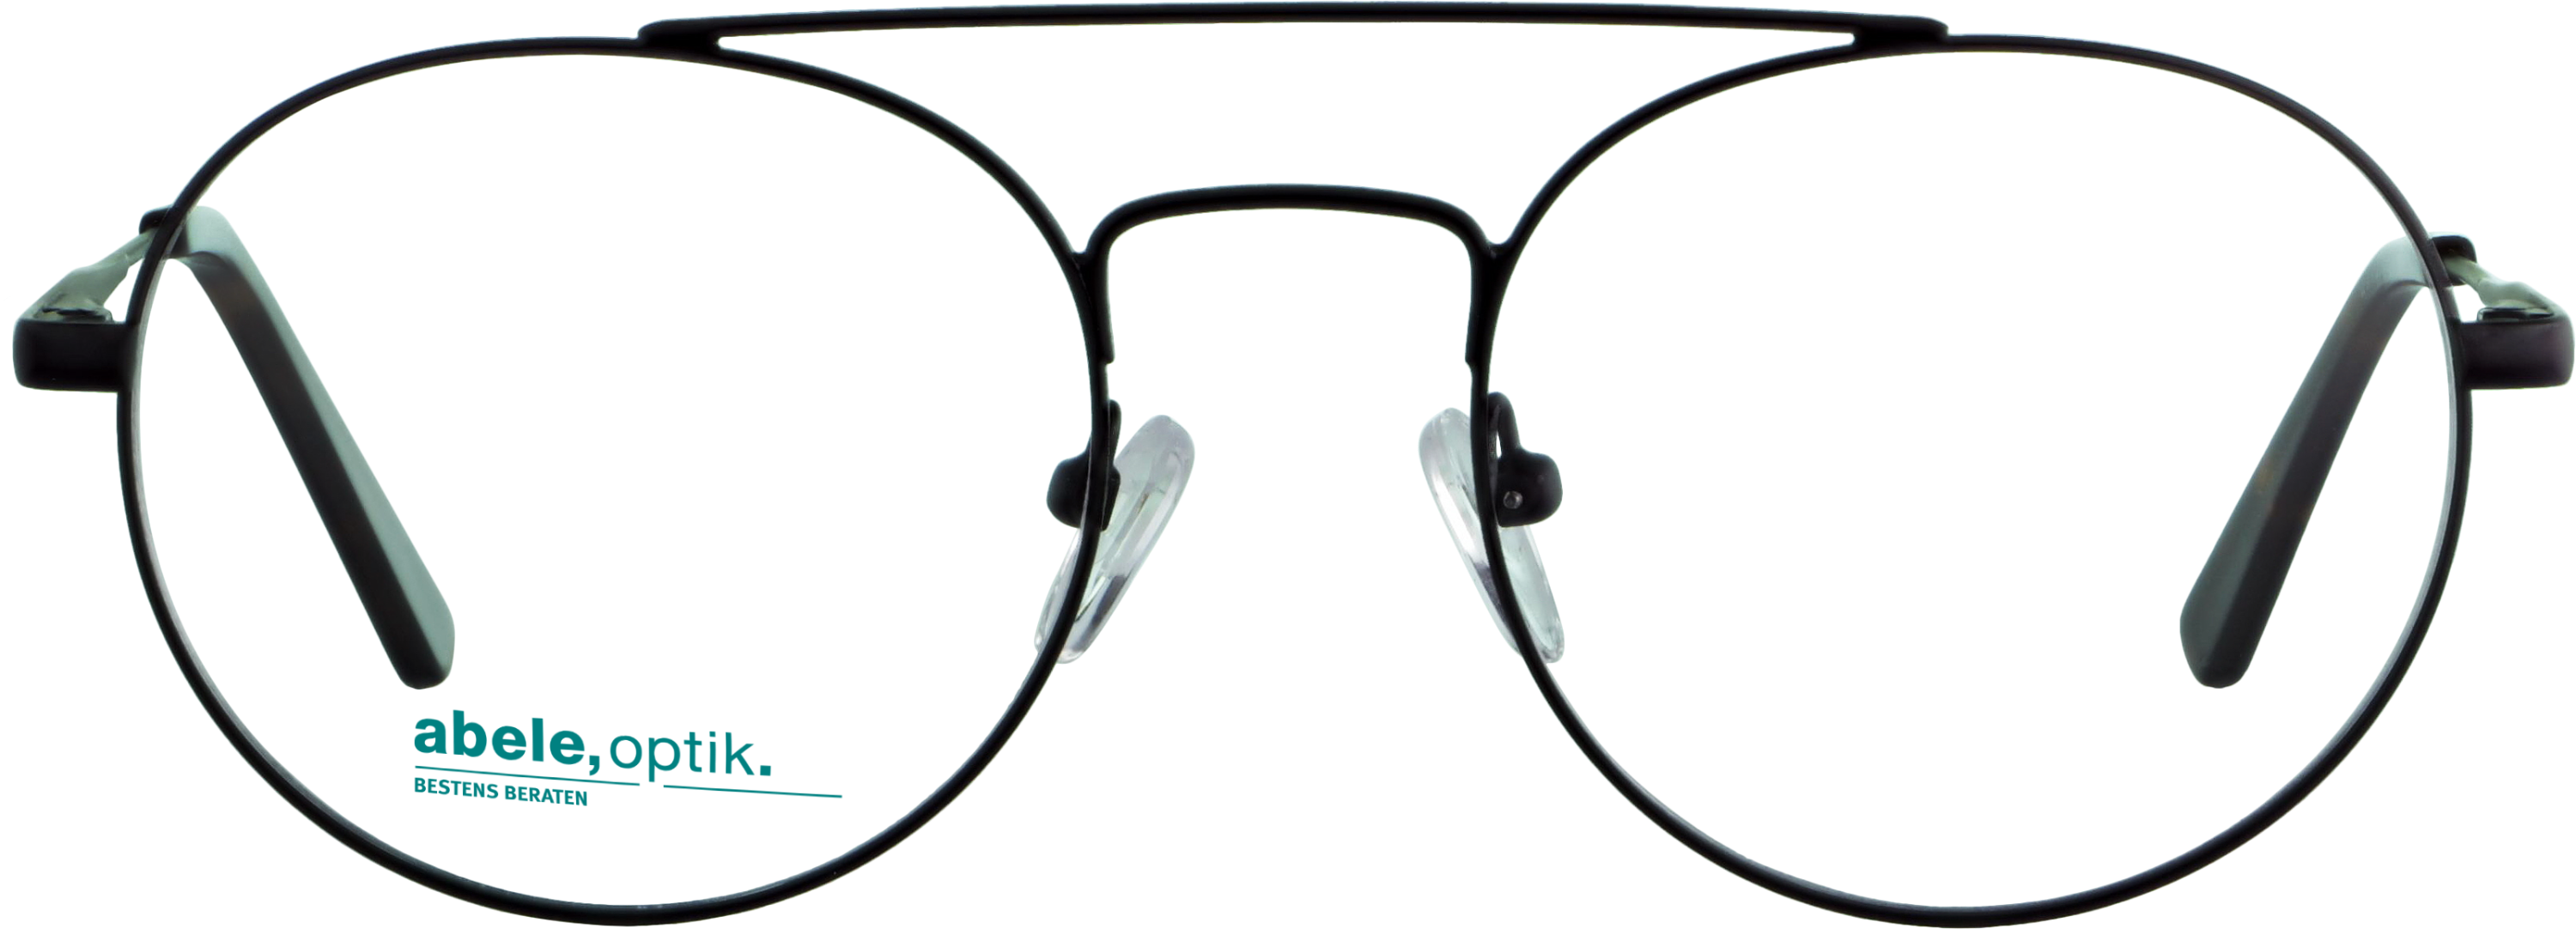 Das Bild zeigt die Korrektionsbrille 141471 von der Marke Abele Optik in schwarz matt.